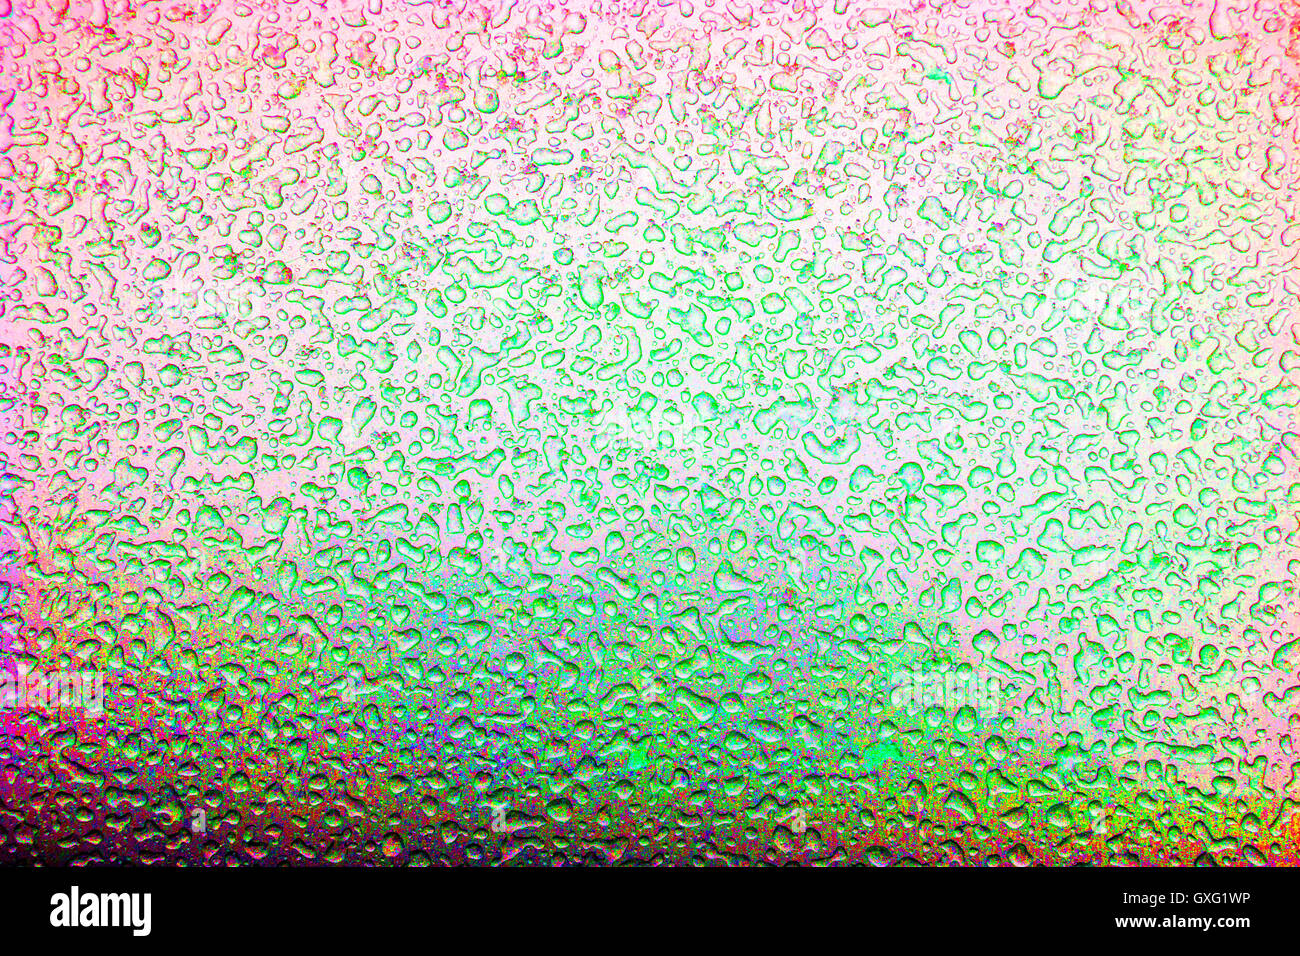 Perles colorées de l'eau congelée après une tempête de neige fondue de créer des modèles de glace à l'extérieur d'un fini métallique argent auto Banque D'Images